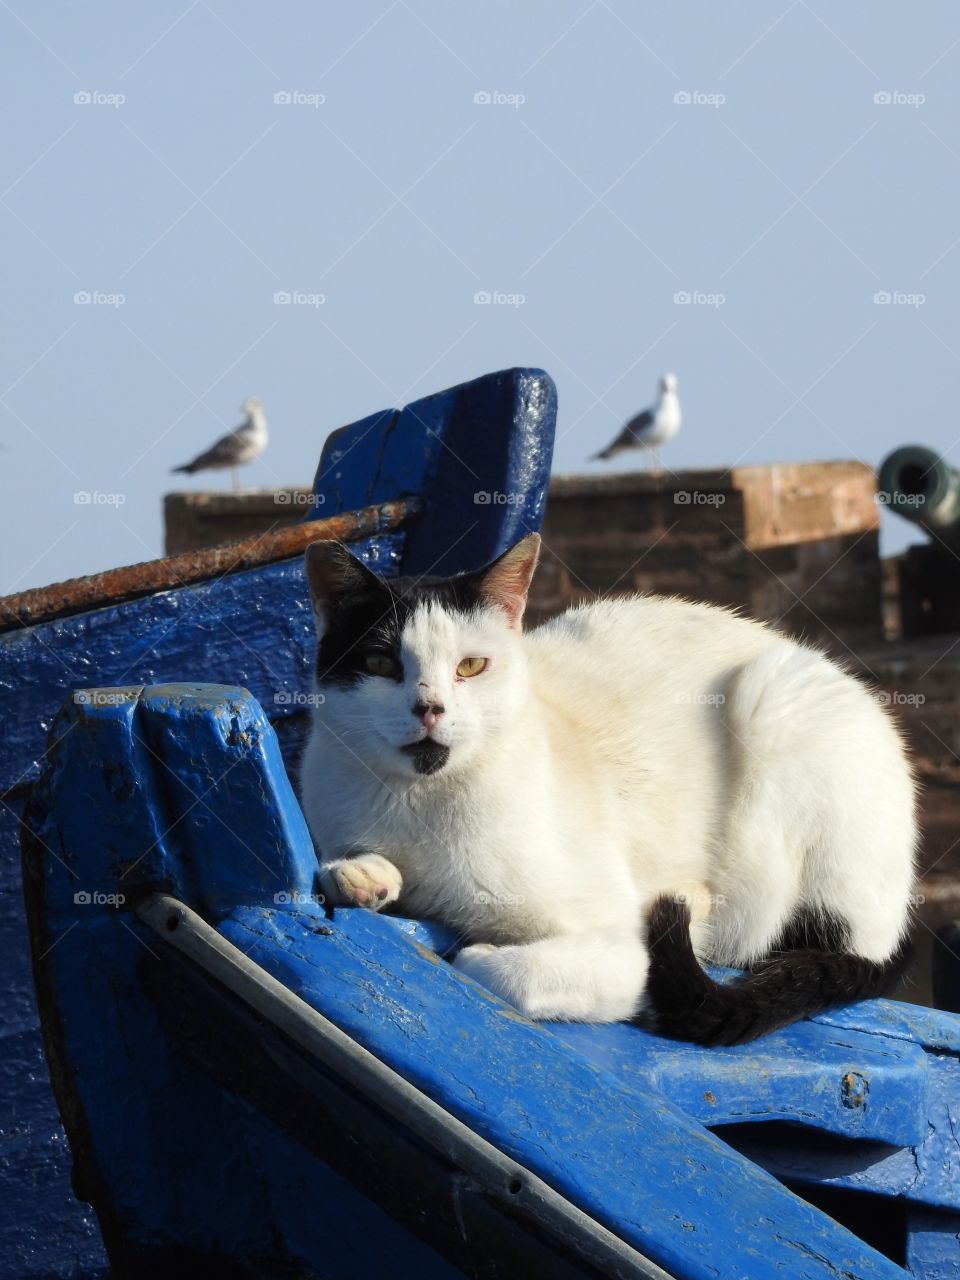 Cat lying in blue boat